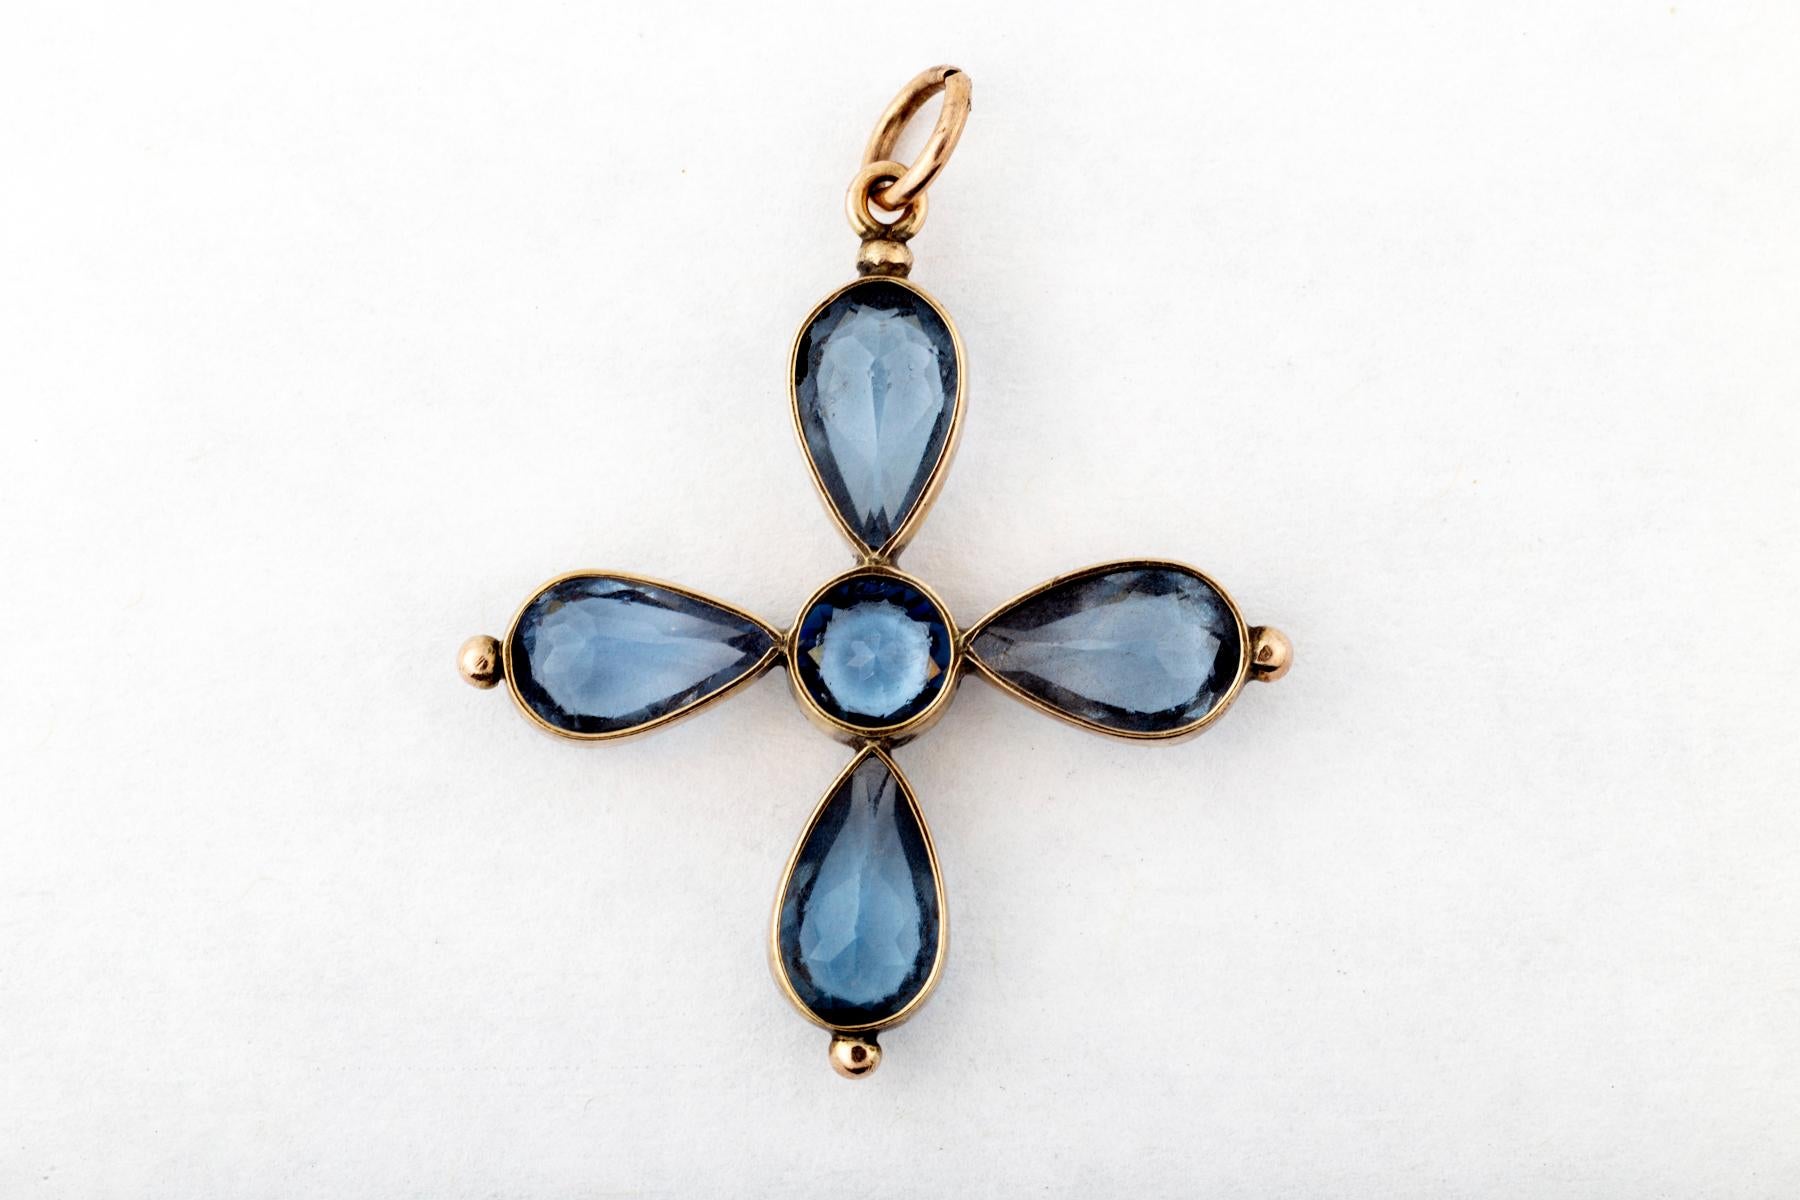 Ein viktorianisches Kreuz aus blauer Paste, gefasst in 15-karätigem Gold und hergestellt in England um 1870. Die verschiedenen Farben der antiken Paste können atemberaubend sein. Die Fassung dieser Steine ist offen, so dass das Licht die